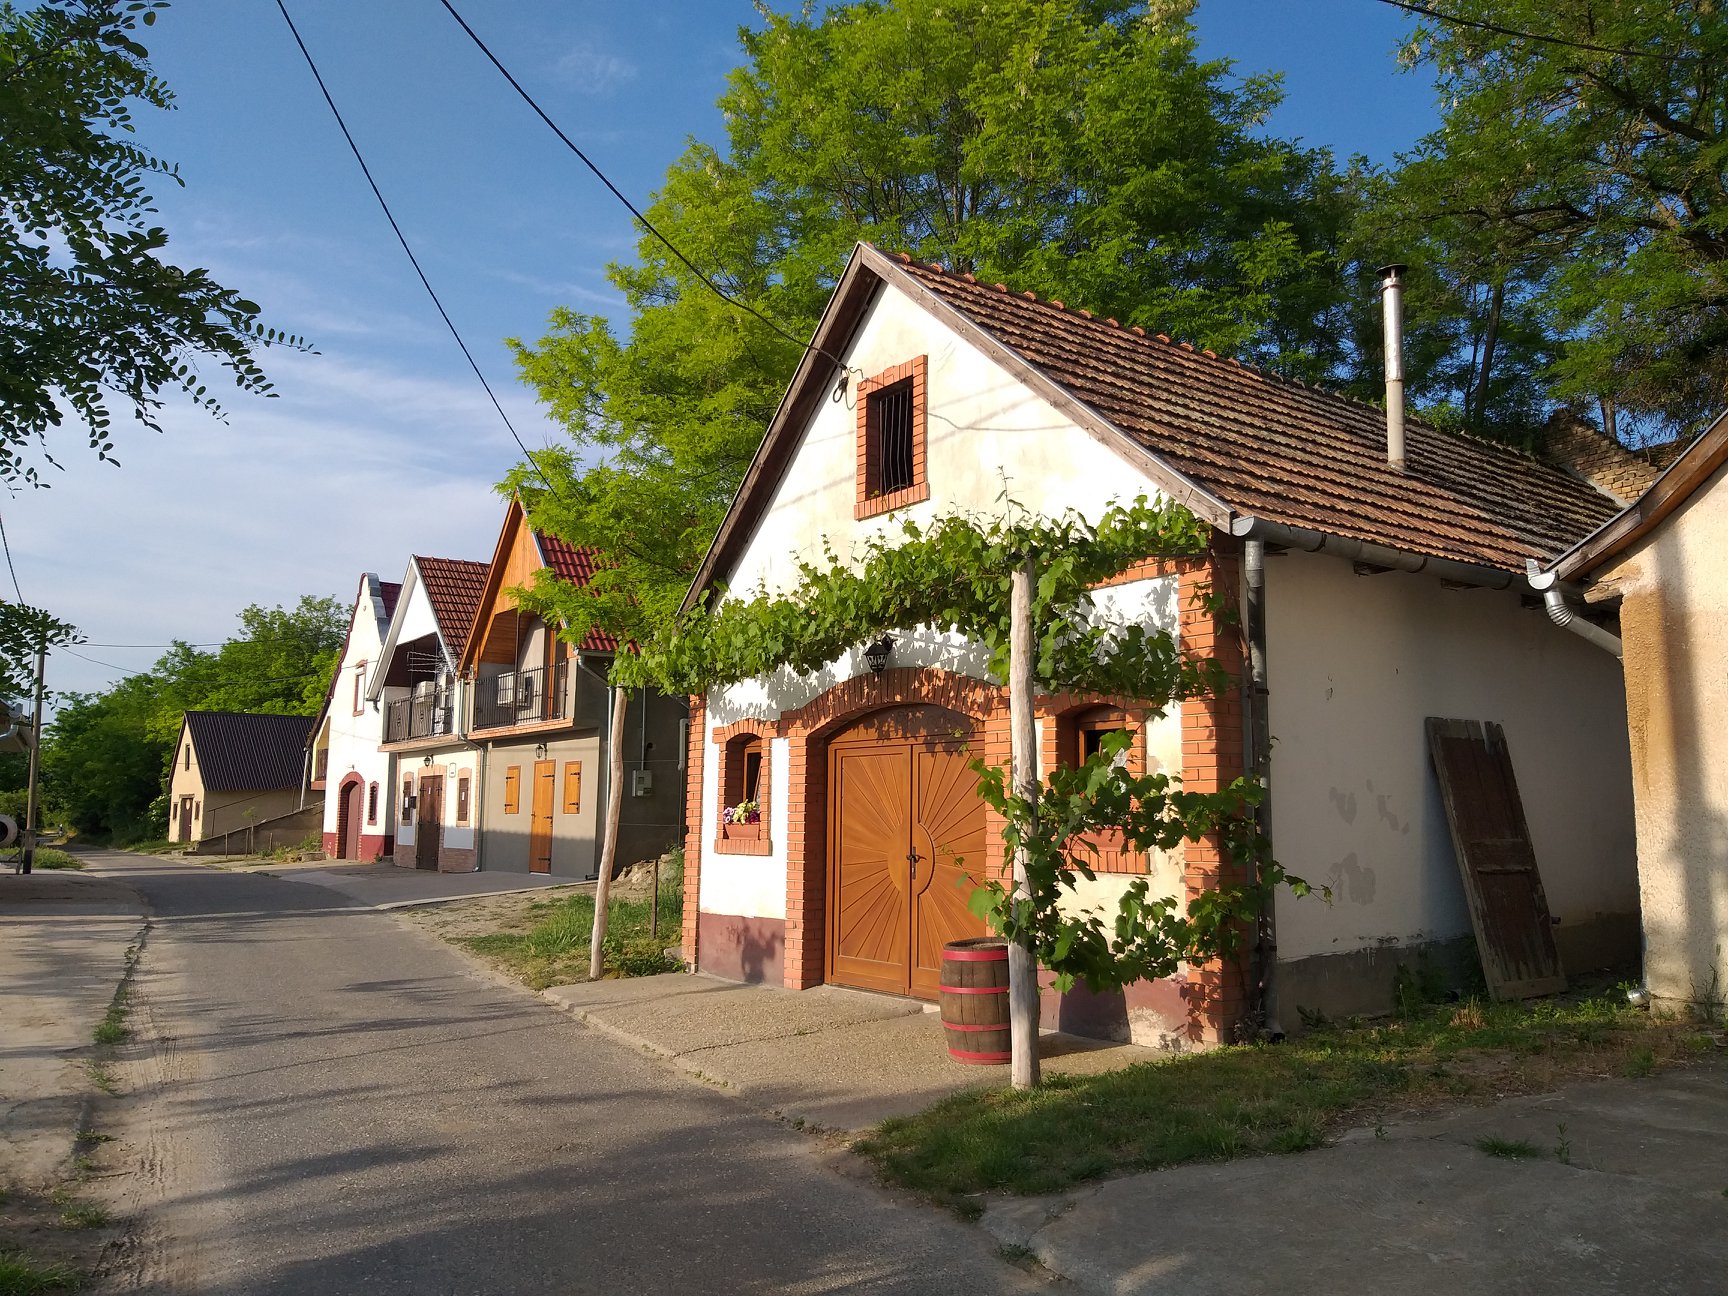 5 elbűvölő magyar falu, aminek takaros sváb házai idilli barangolásra invitálnak